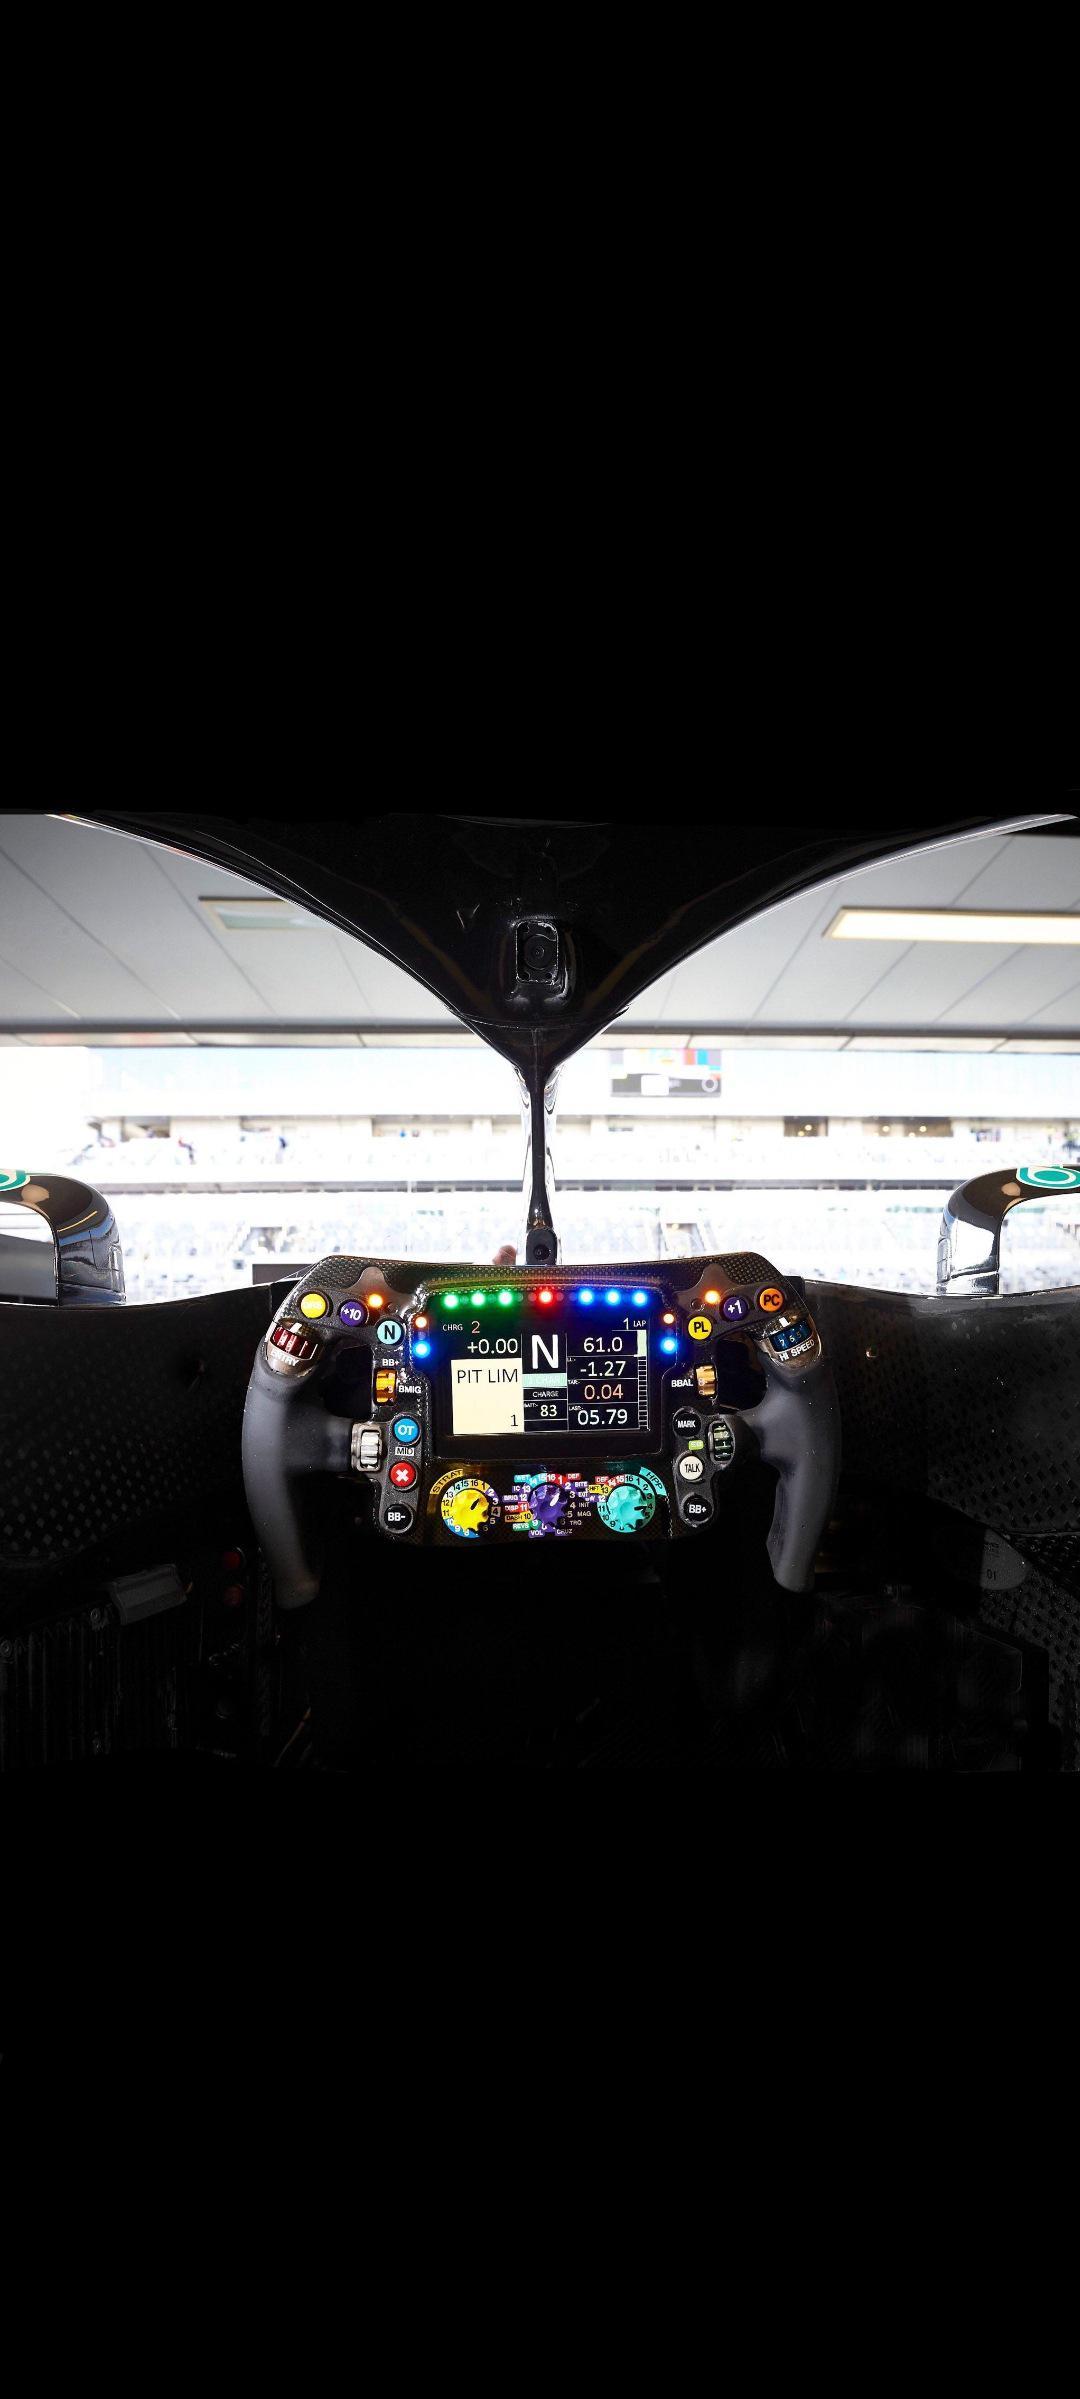 Mercedes Amg Petronas F1 Car Cockpit Showing